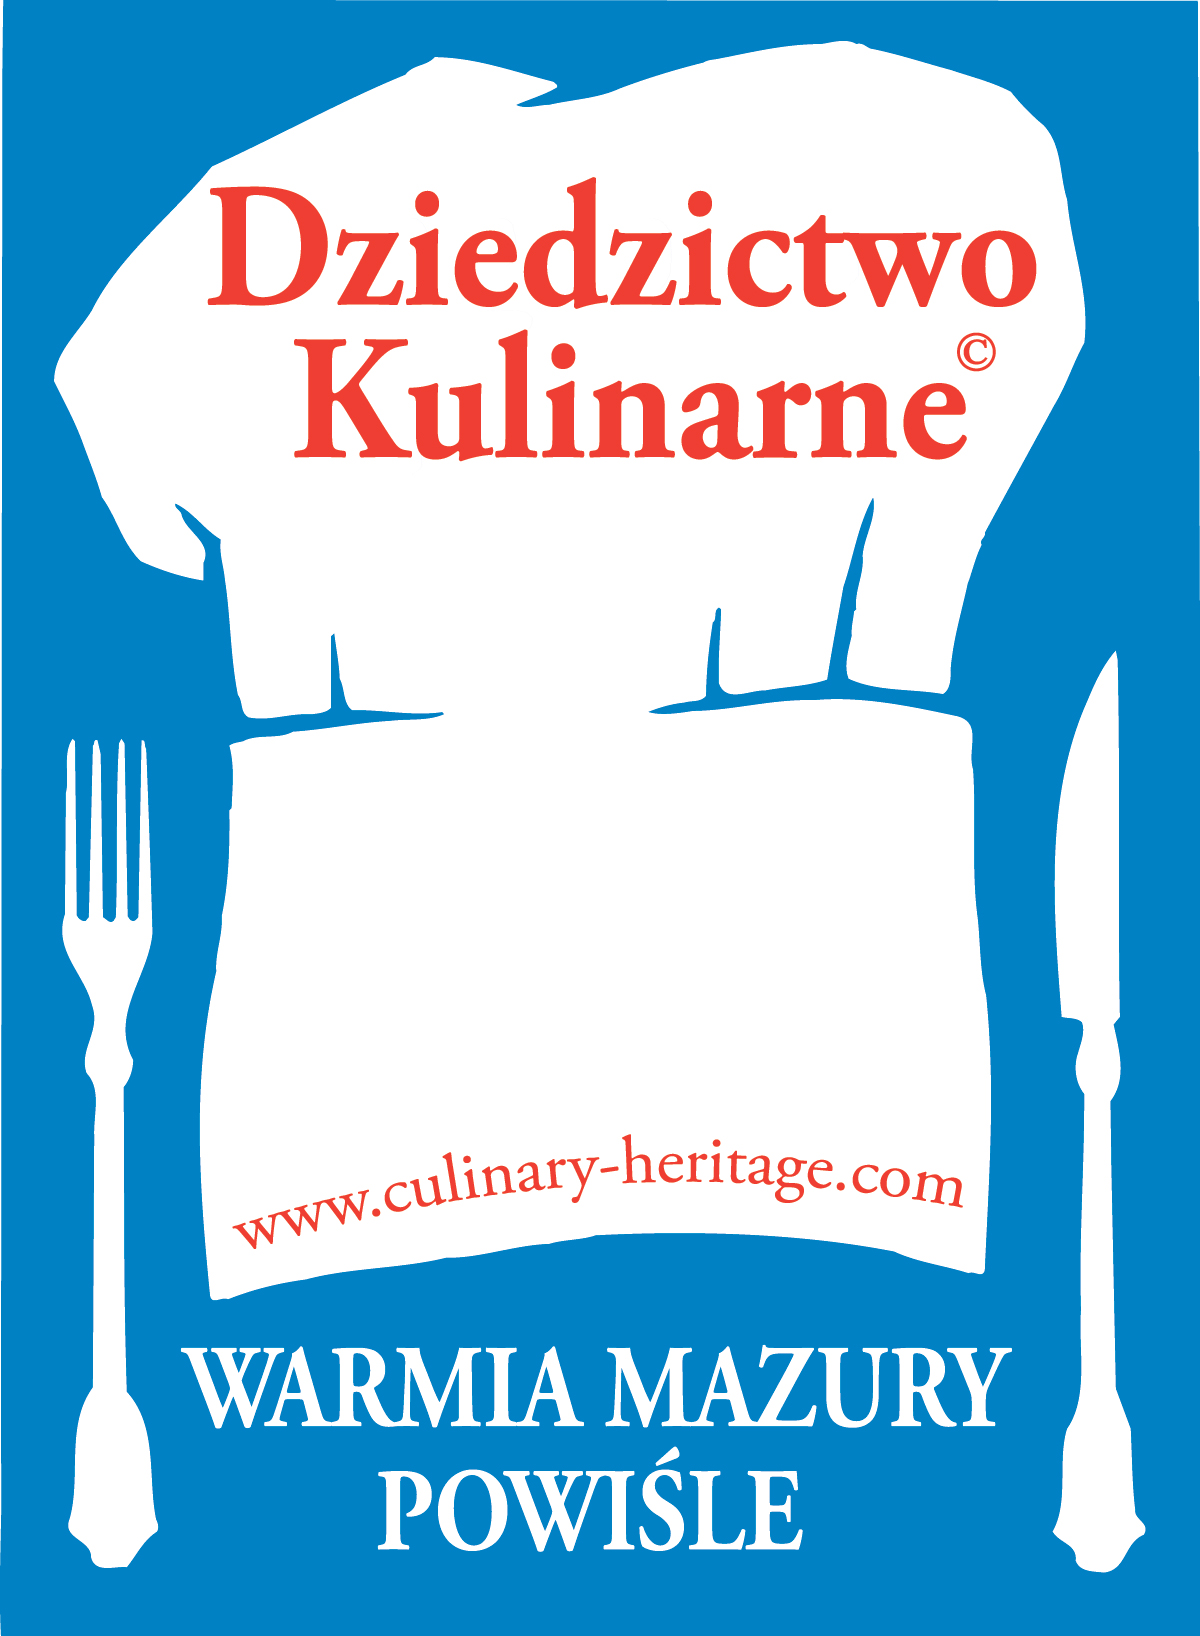 Dziedzictwo Kulinarne Warmia, Mazury, Powiśle